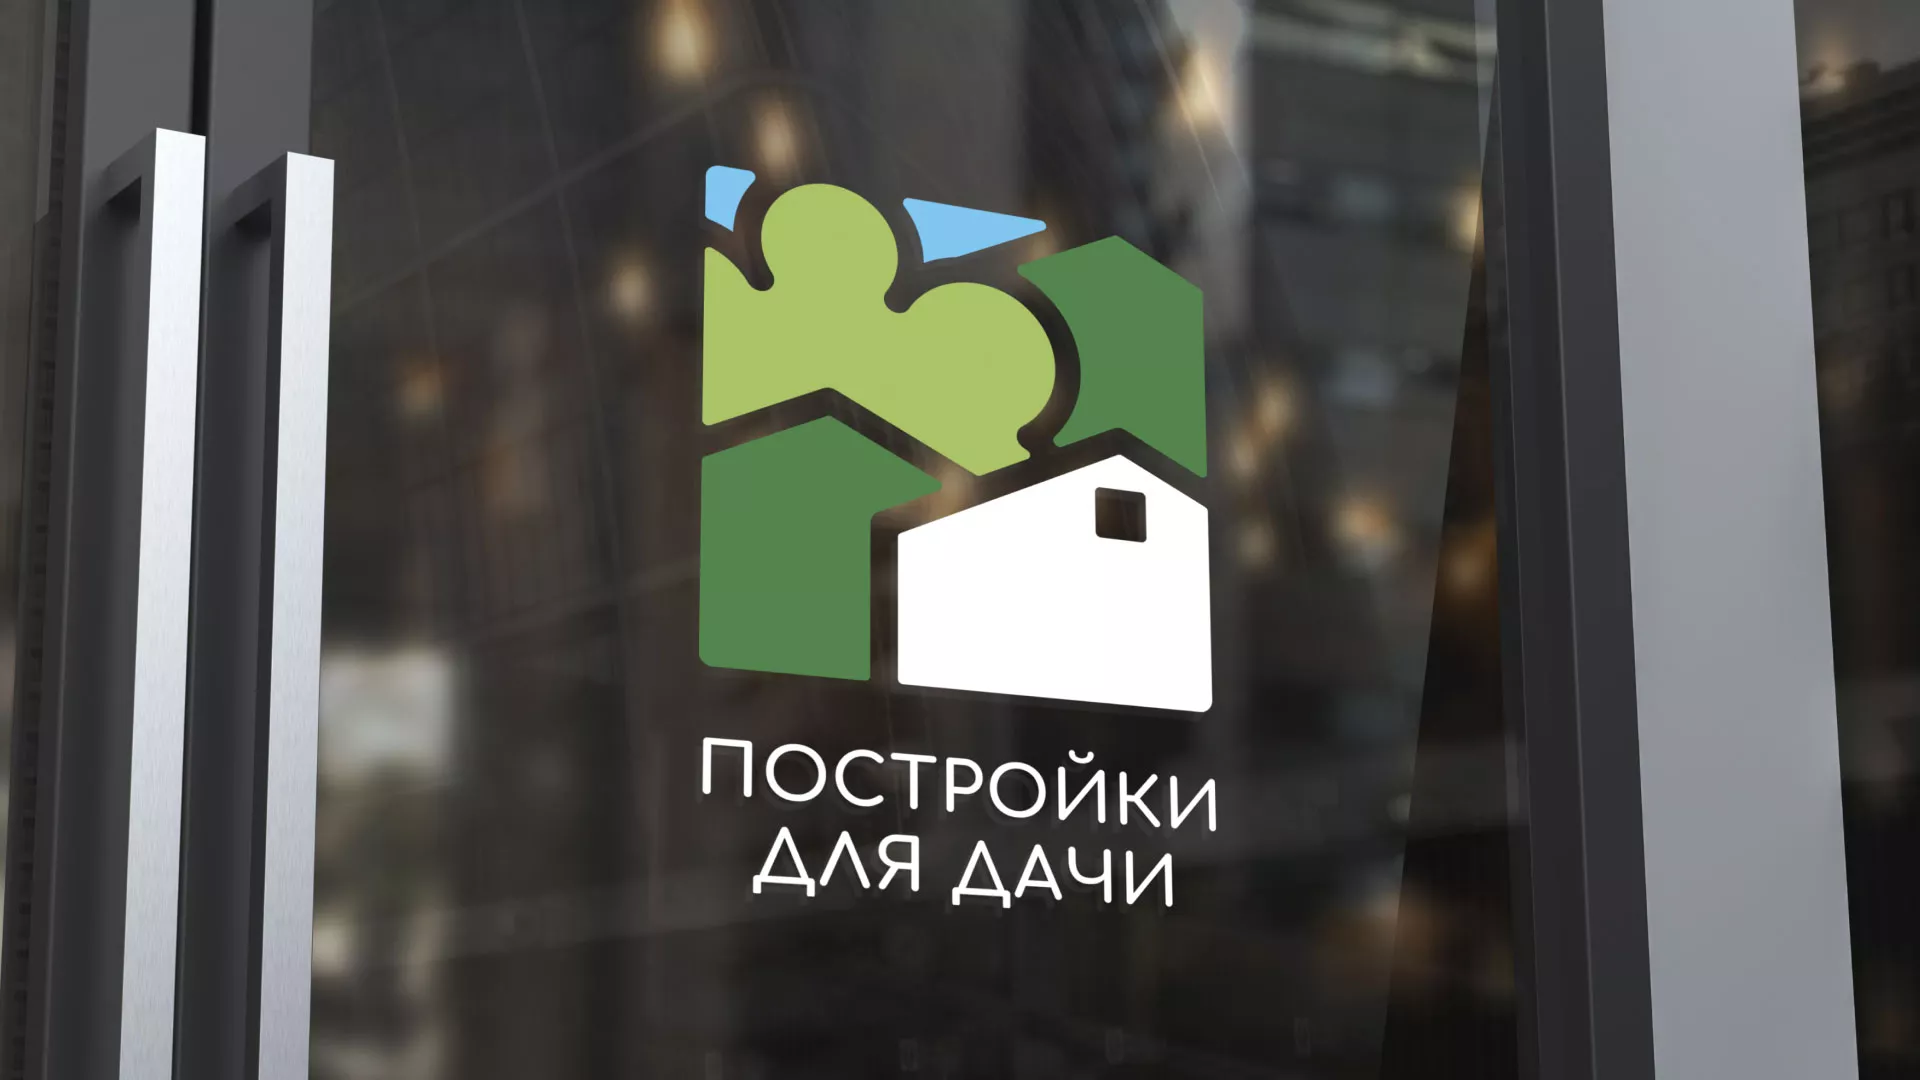 Разработка логотипа в Михайловке для компании «Постройки для дачи»